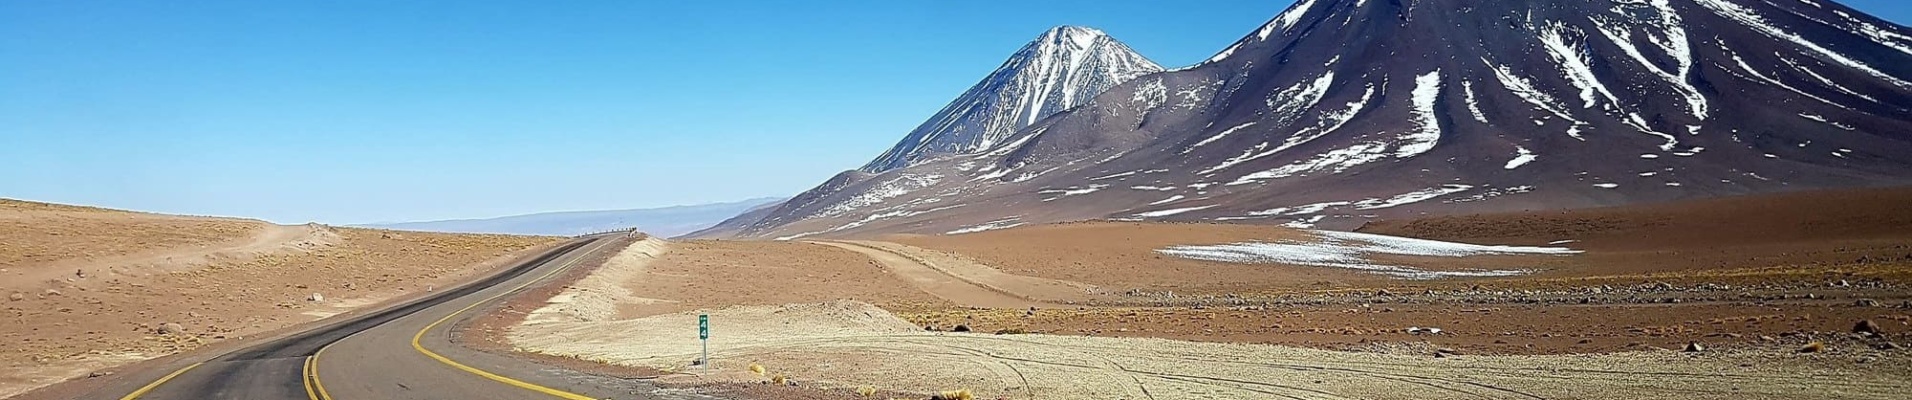 Transports intérieurs au Chili. Location de voiture Chili. Route dans le désert d'Atacama.